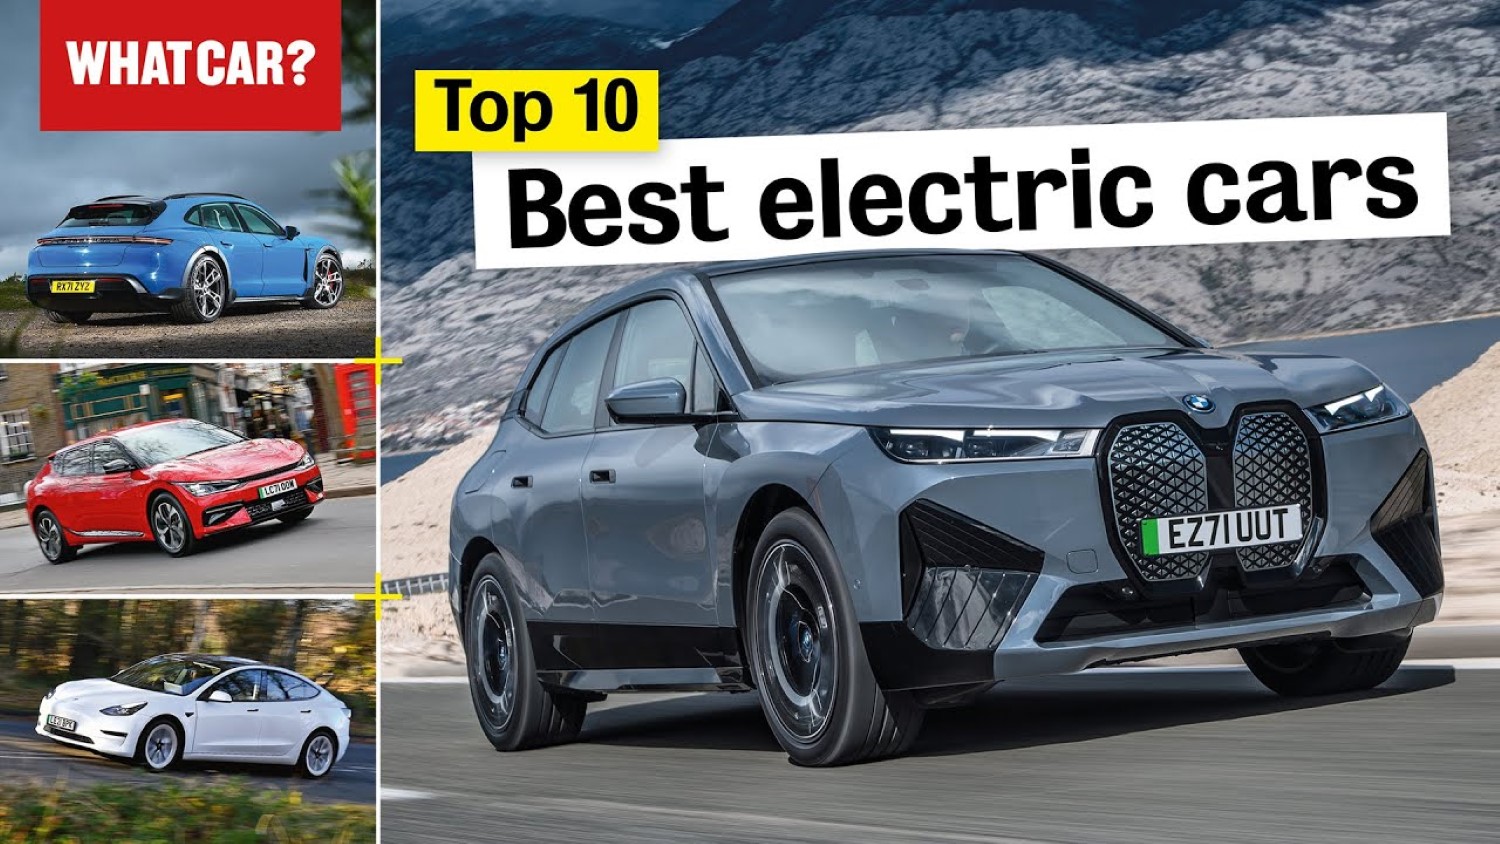 Најдобрите електрични автомобили за 2022 година според WhatCar? / ВИДЕО